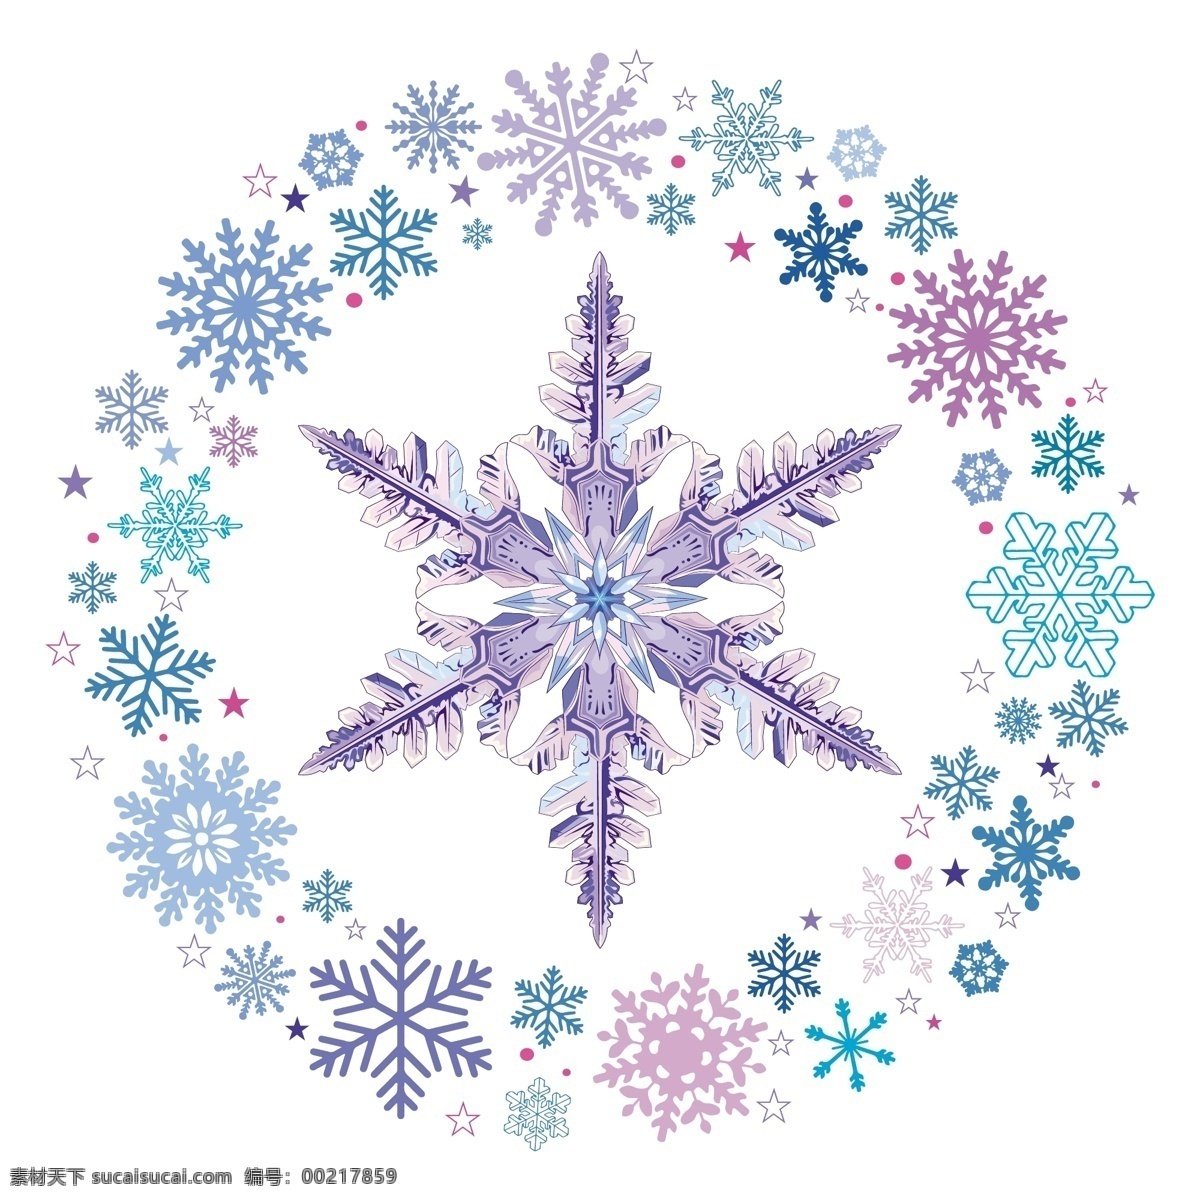 创意 雪花 环 冰晶 矢量 花纹 星星 冬季 寒冷 文化艺术 绘画书法